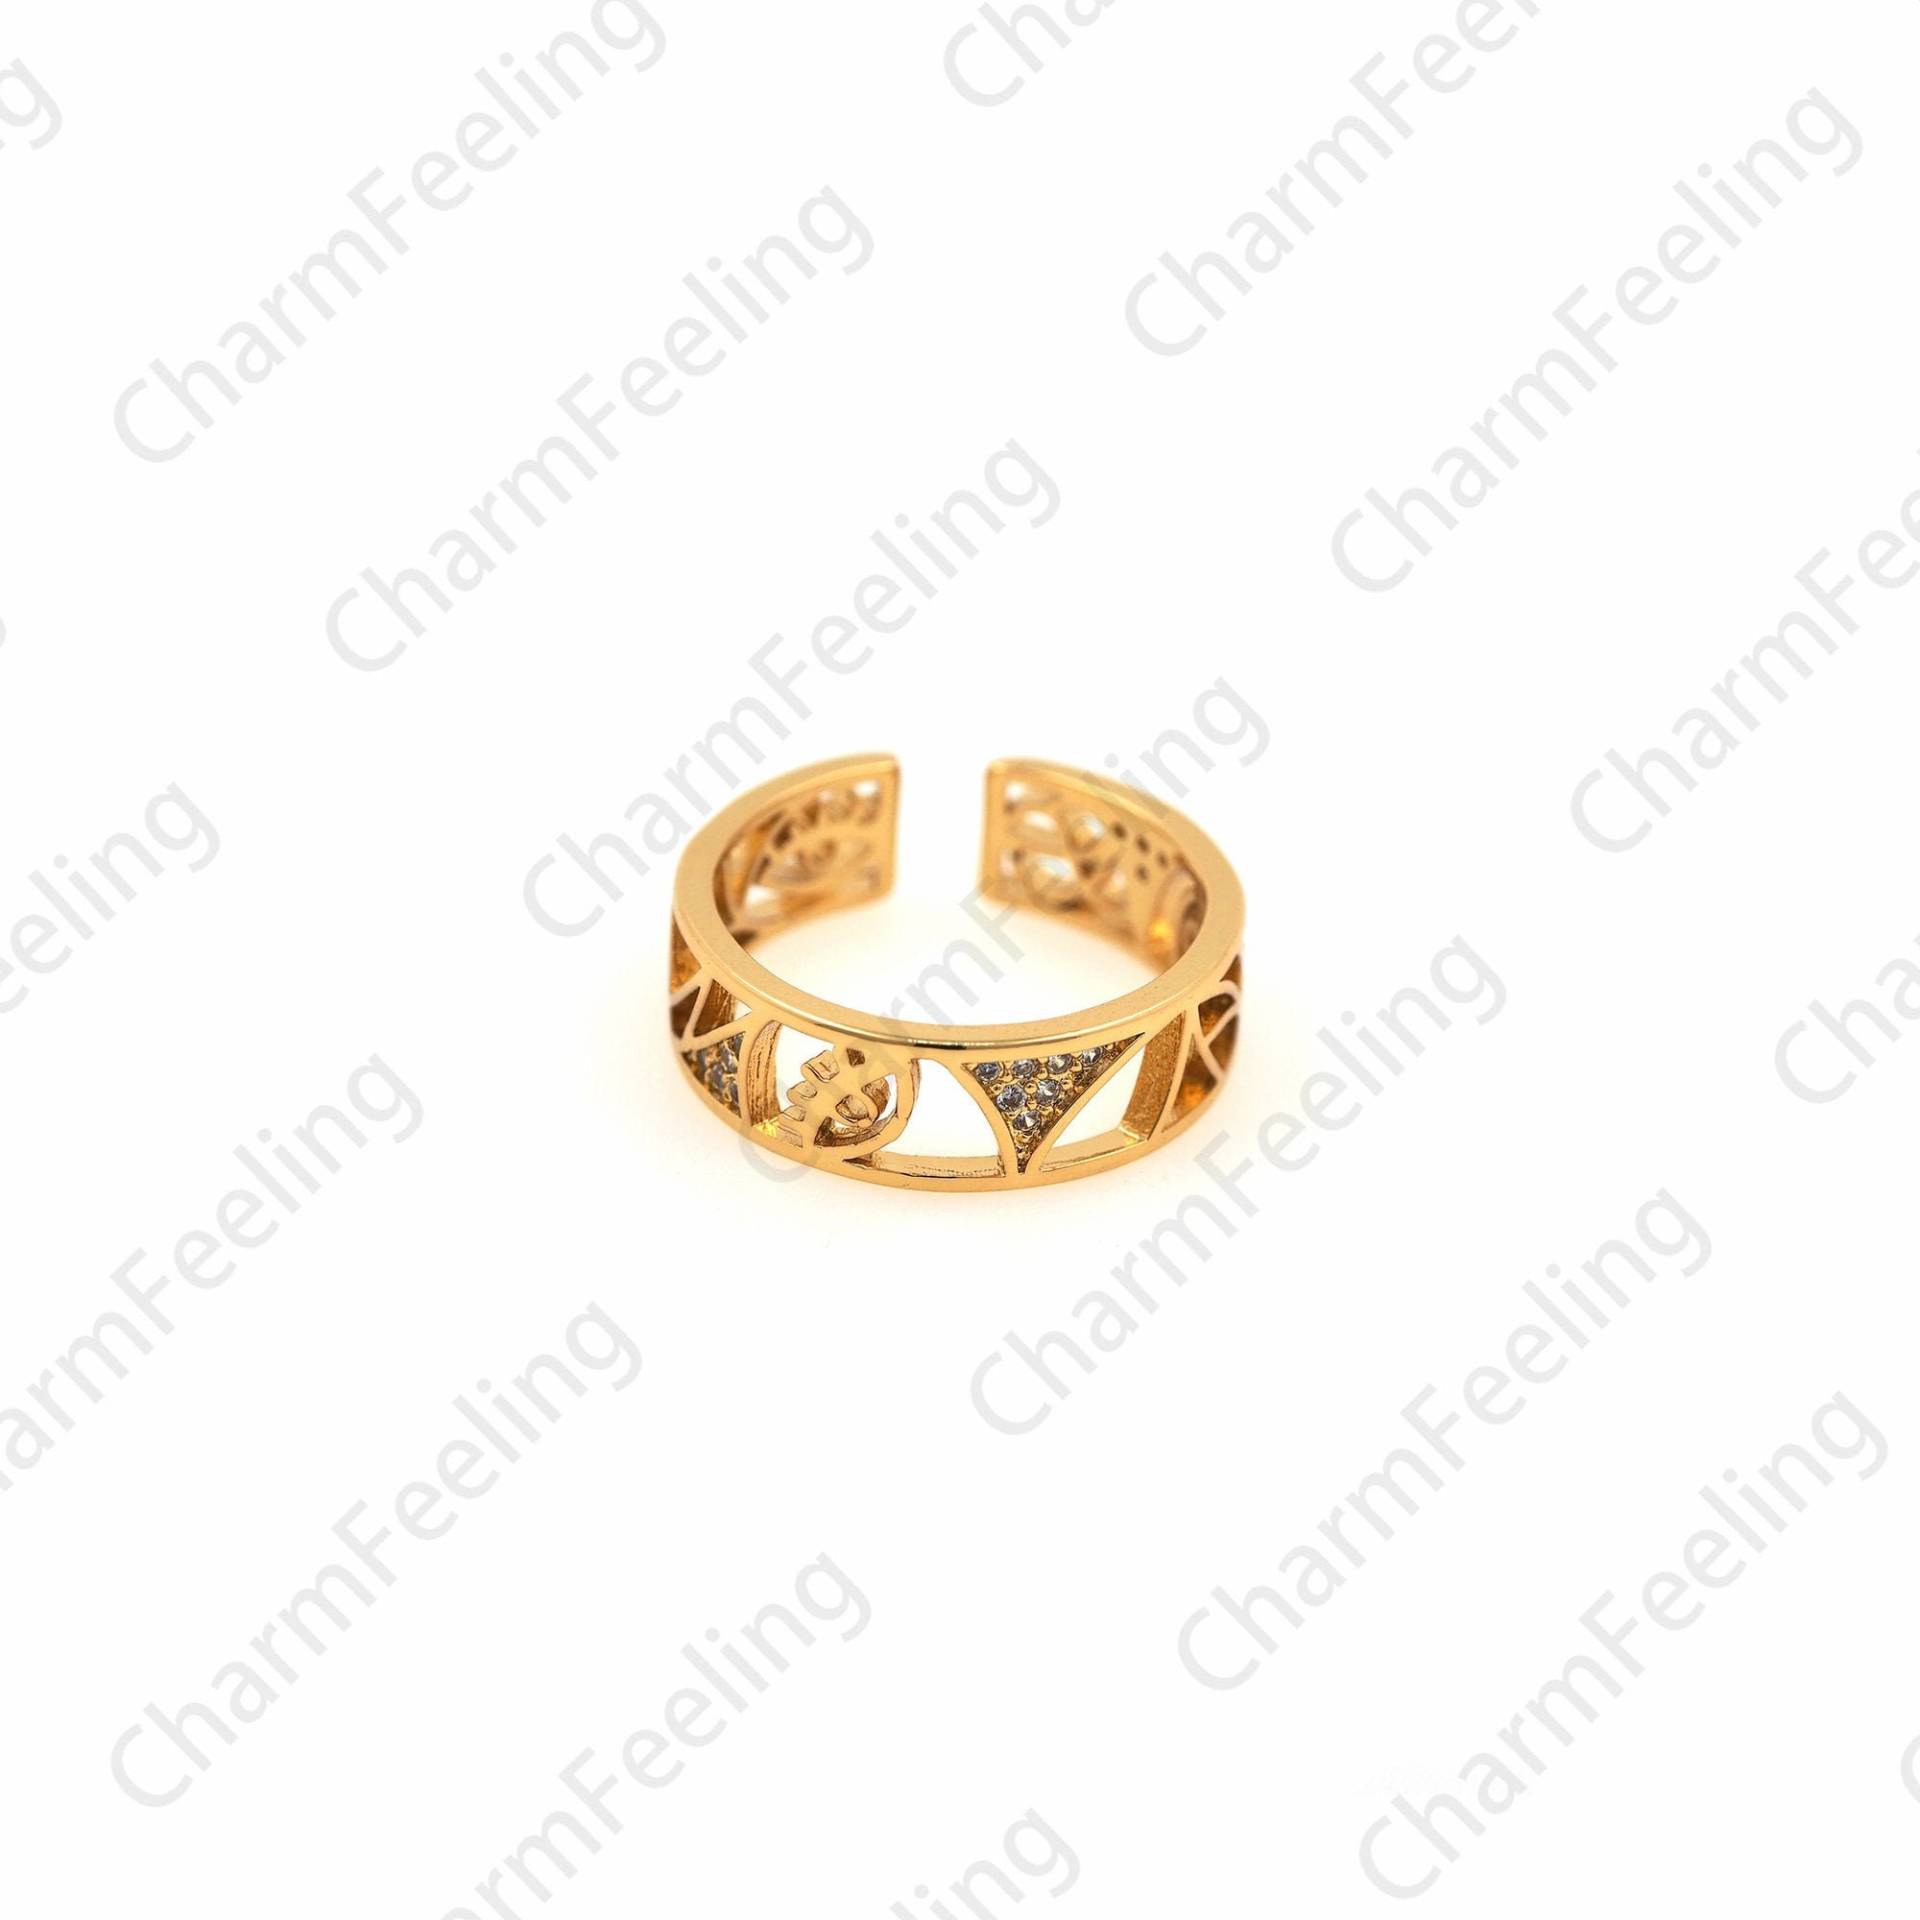 18K Gold Filled Augenring, Zierlicher Ring, Verstellbarer Stapelbarer Offener Augenanhänger von CharmFeeling